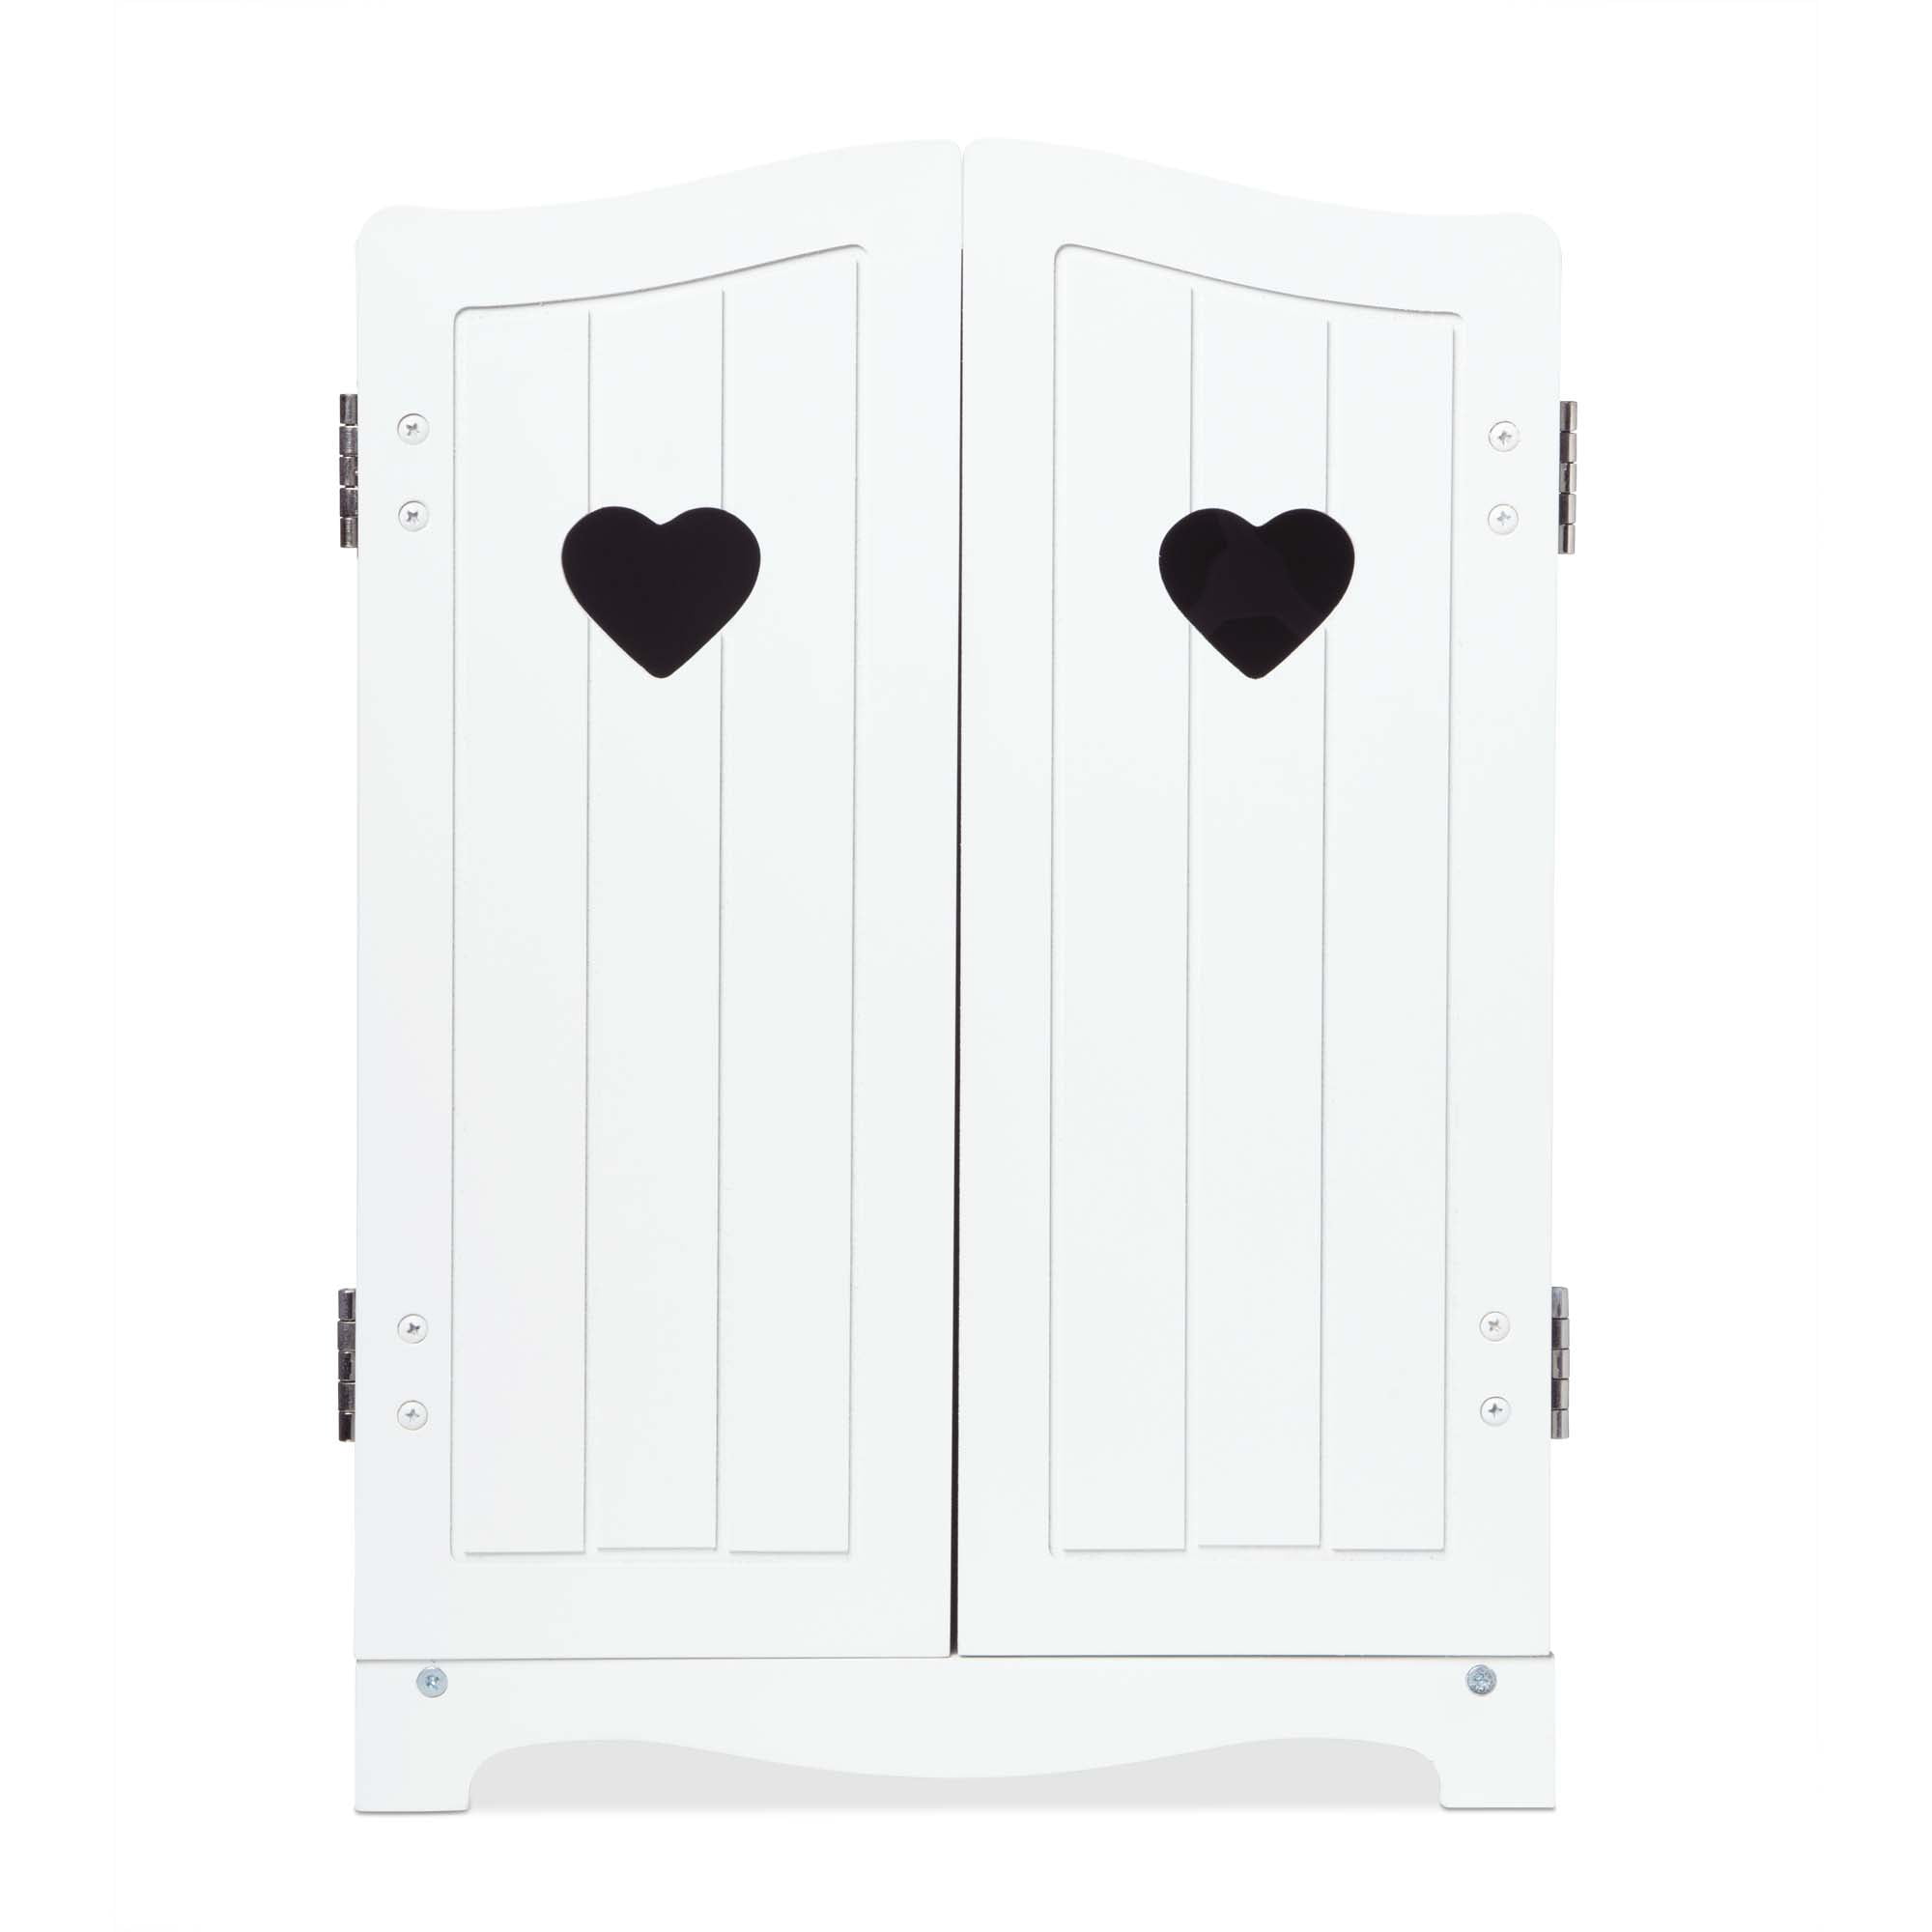 Pack of 2 Scented heart door hanger wardrobe scenter stuffed heart heart decor drawer freshener wardrobe freshener